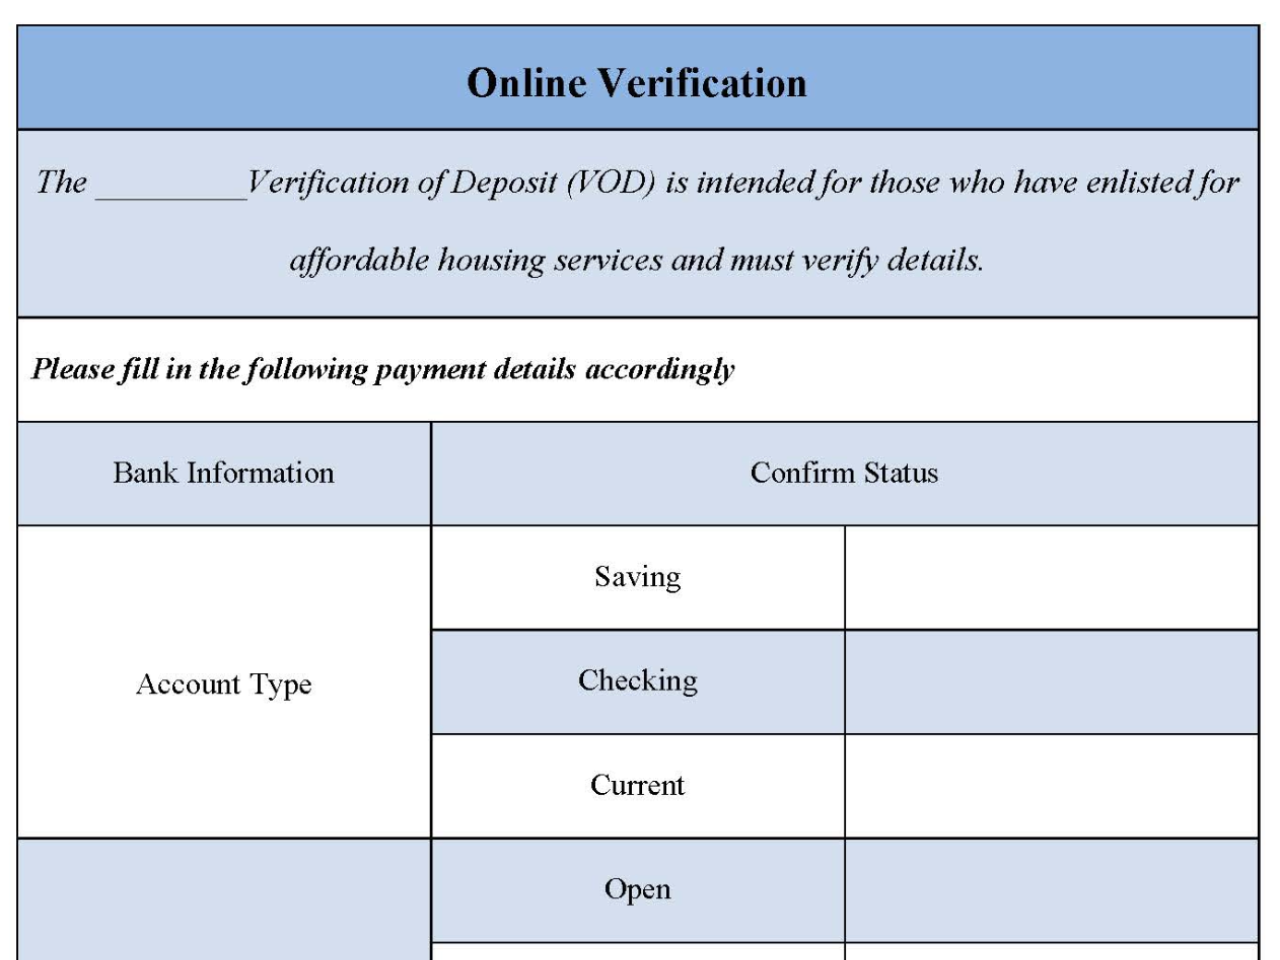 Online Verification Form